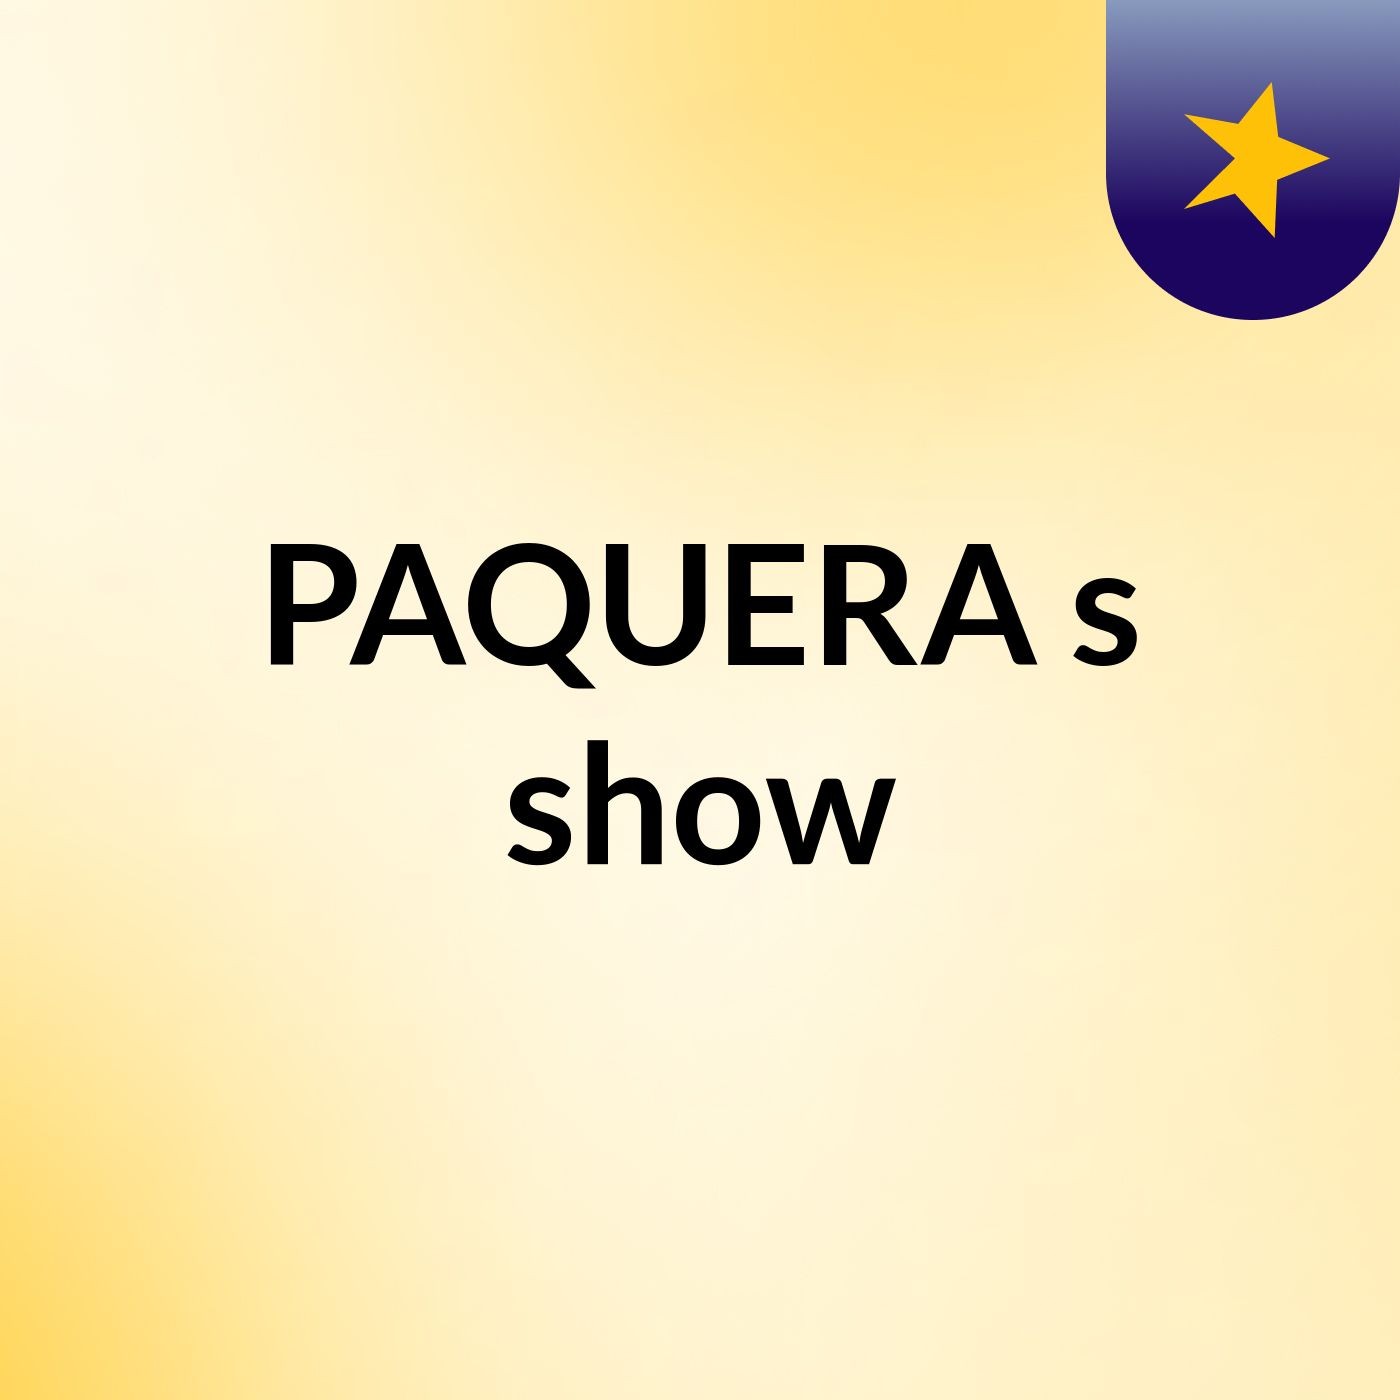 PAQUERA's show